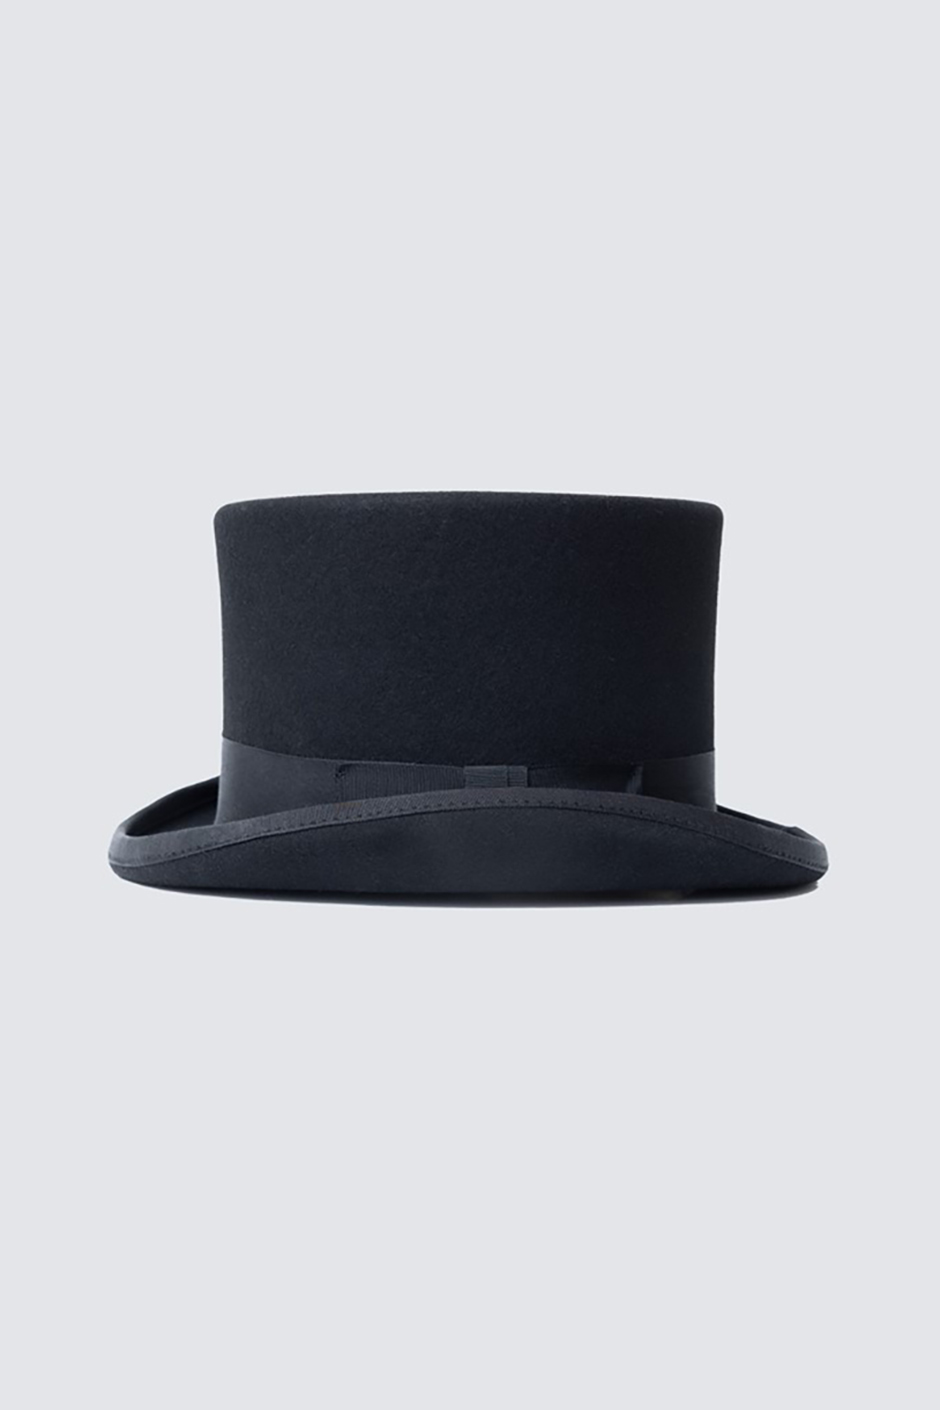 hawes-and-curtis-black-top-hat.jpg